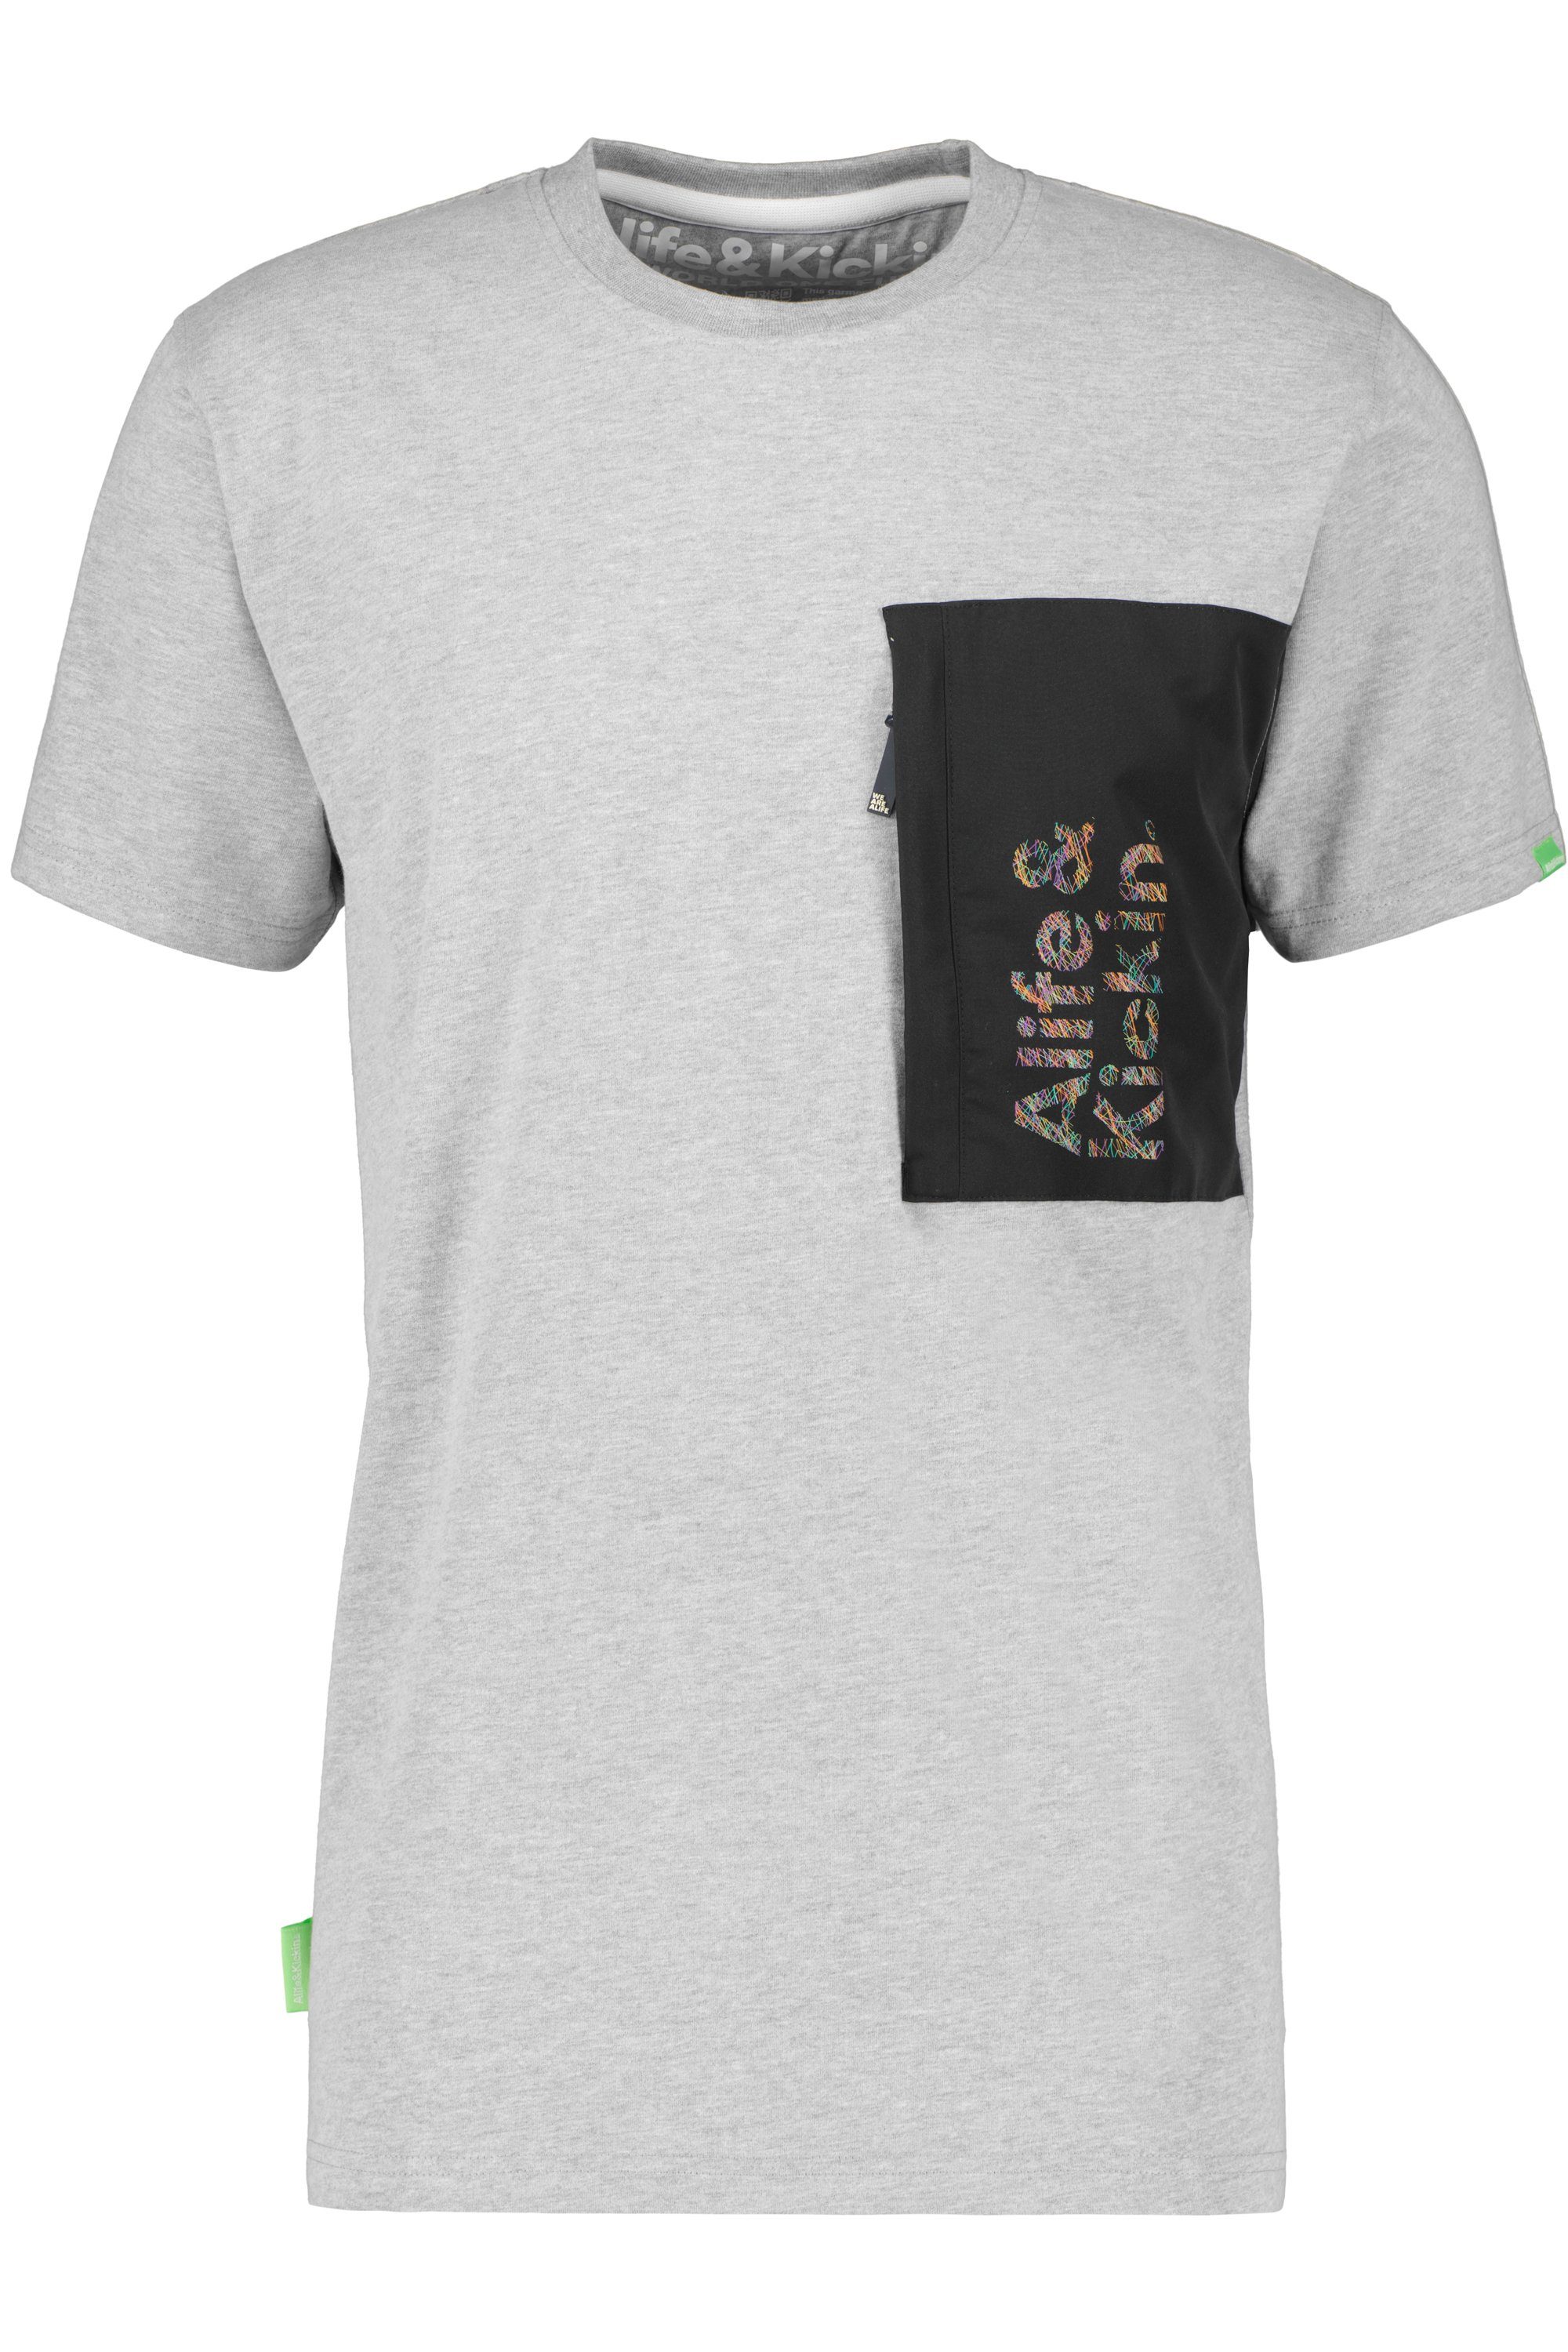 Alife & Shirt Herren T-Shirt Kickin RossAK steal T-Shirt